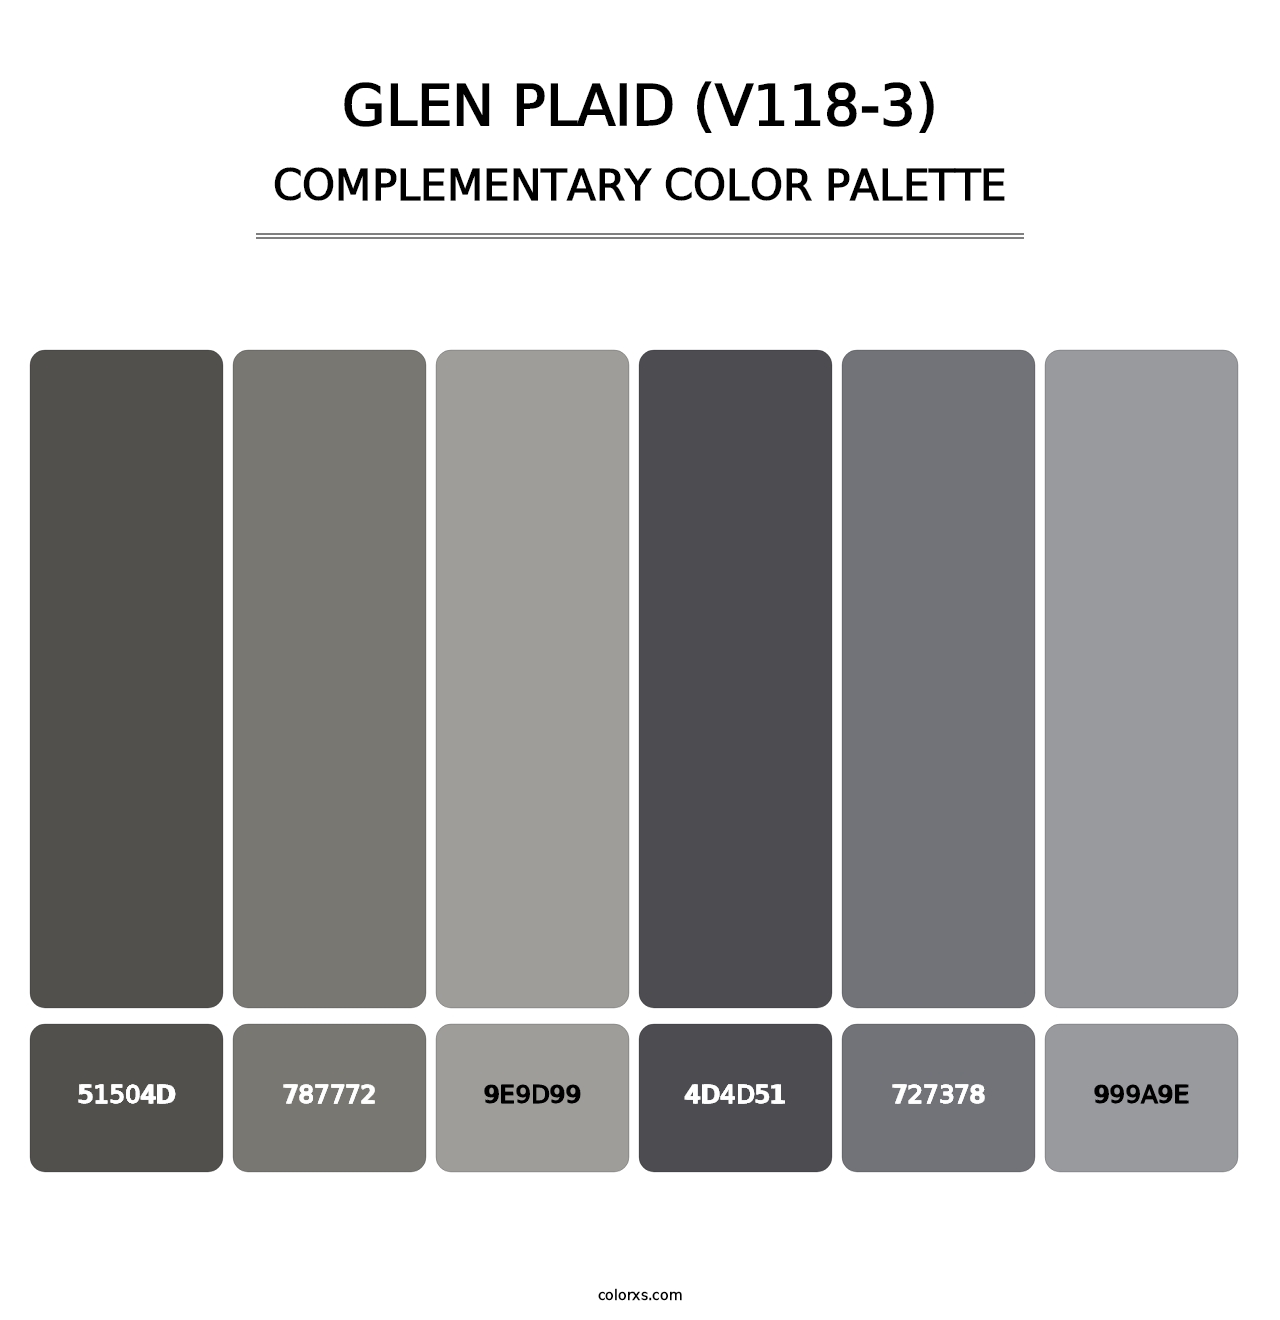 Glen Plaid (V118-3) - Complementary Color Palette